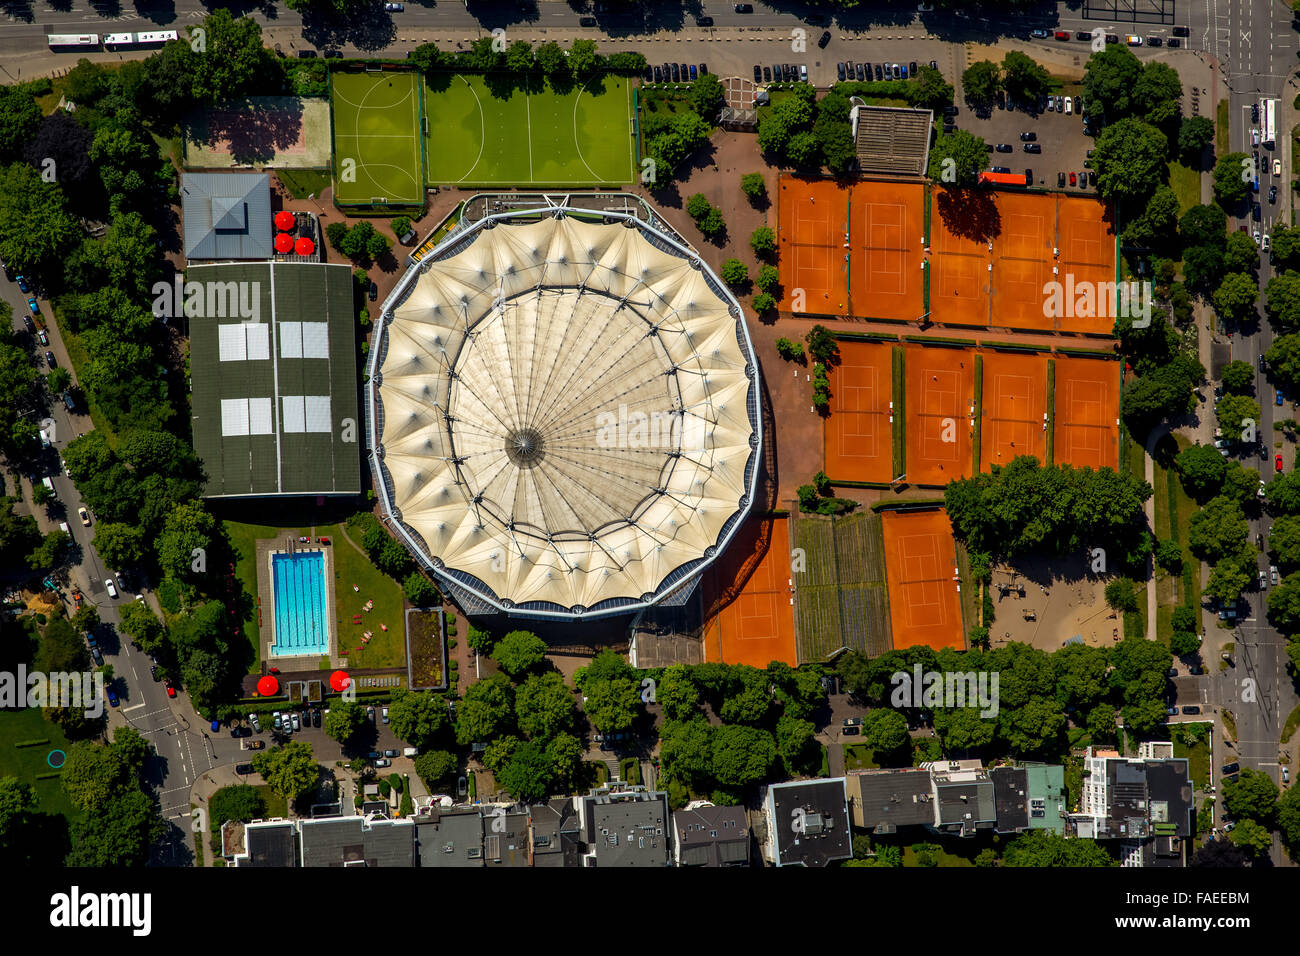 Aerial view, Rothenbaum tennis courts, Rothenbaum Sport GmbH, Hamburg, Free and Hanseatic City of Hamburg, Hamburg, Germany Stock Photo